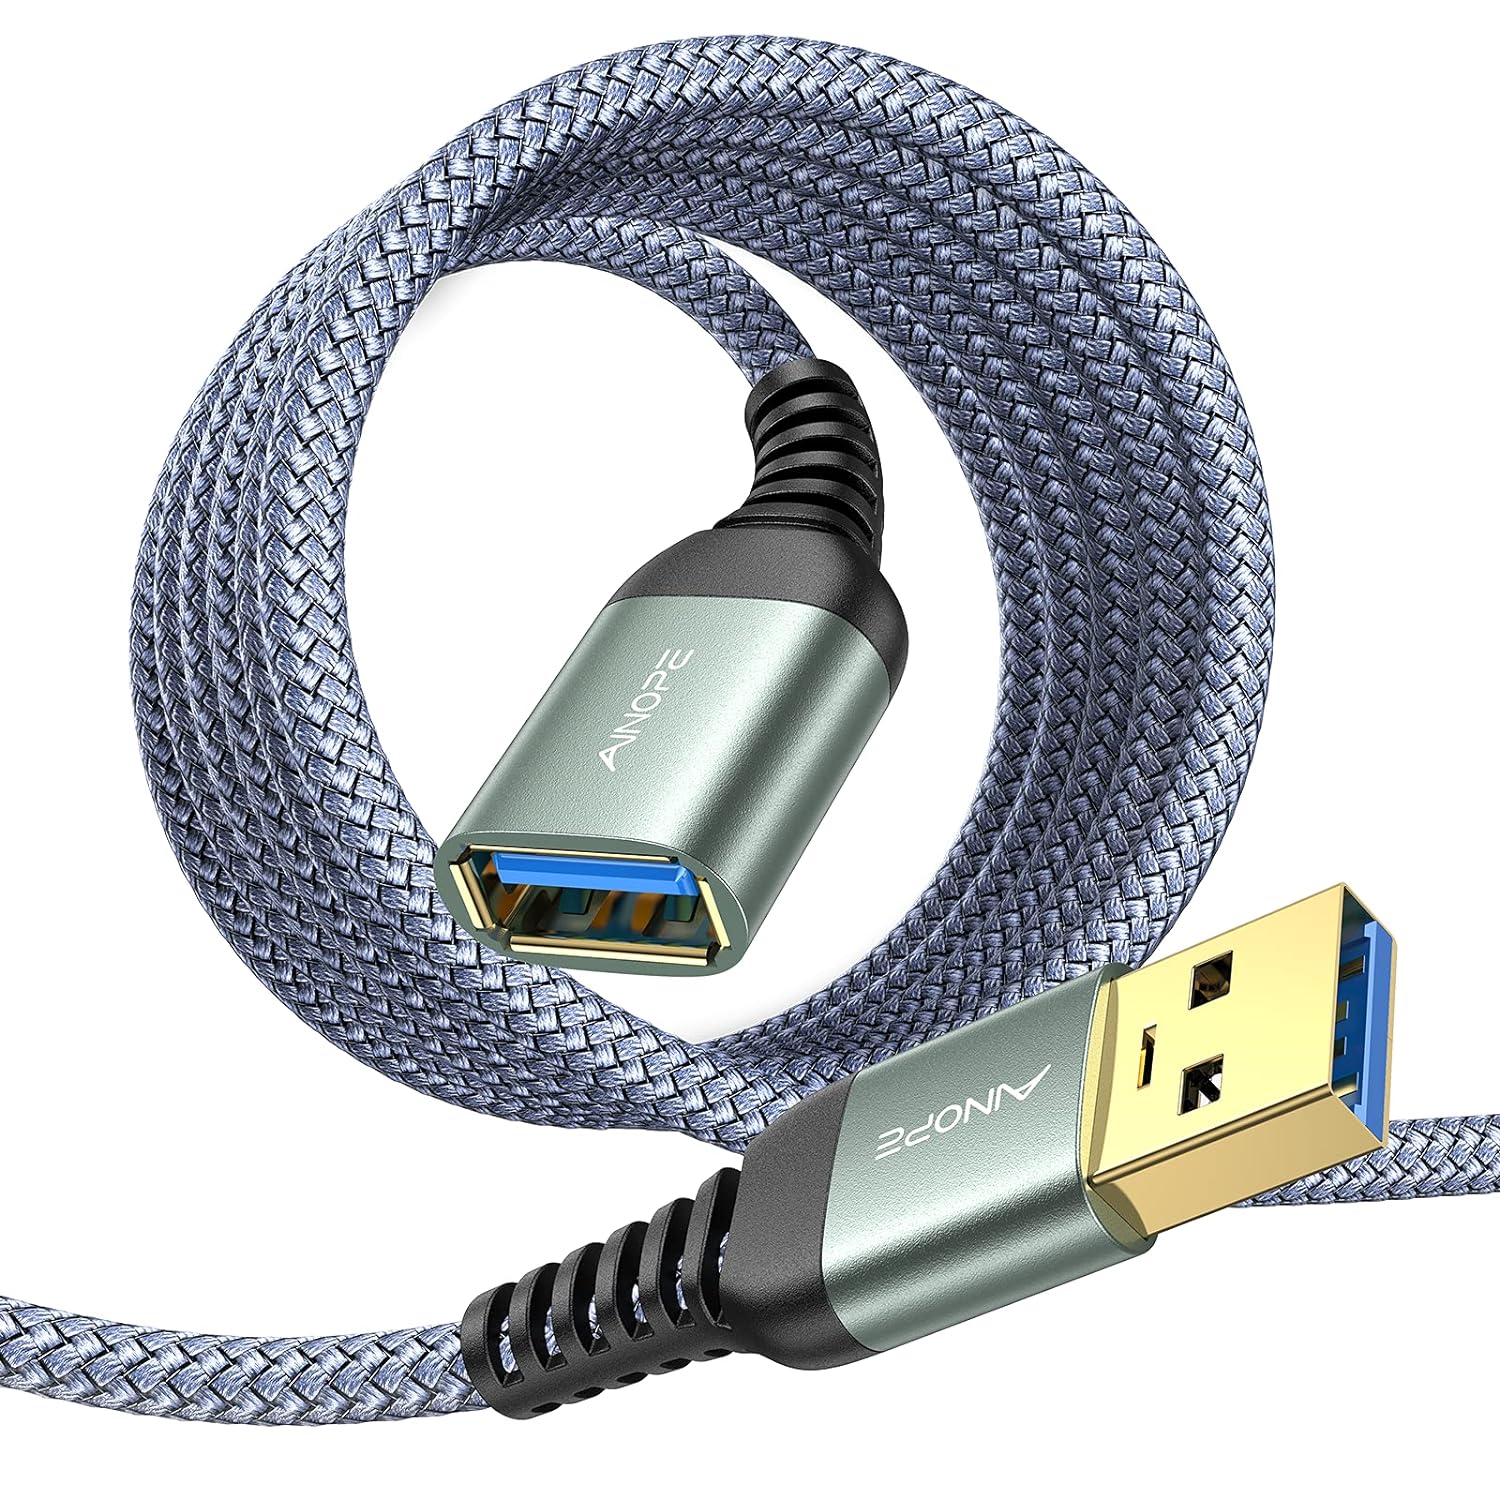 AINOPE - Cable de extensión USB 3.0 de 16 pies tipo A, macho a hembra. Cable de extensión de alta transferencia de datos, compatible con teclado USB, unidad flash, disco duro